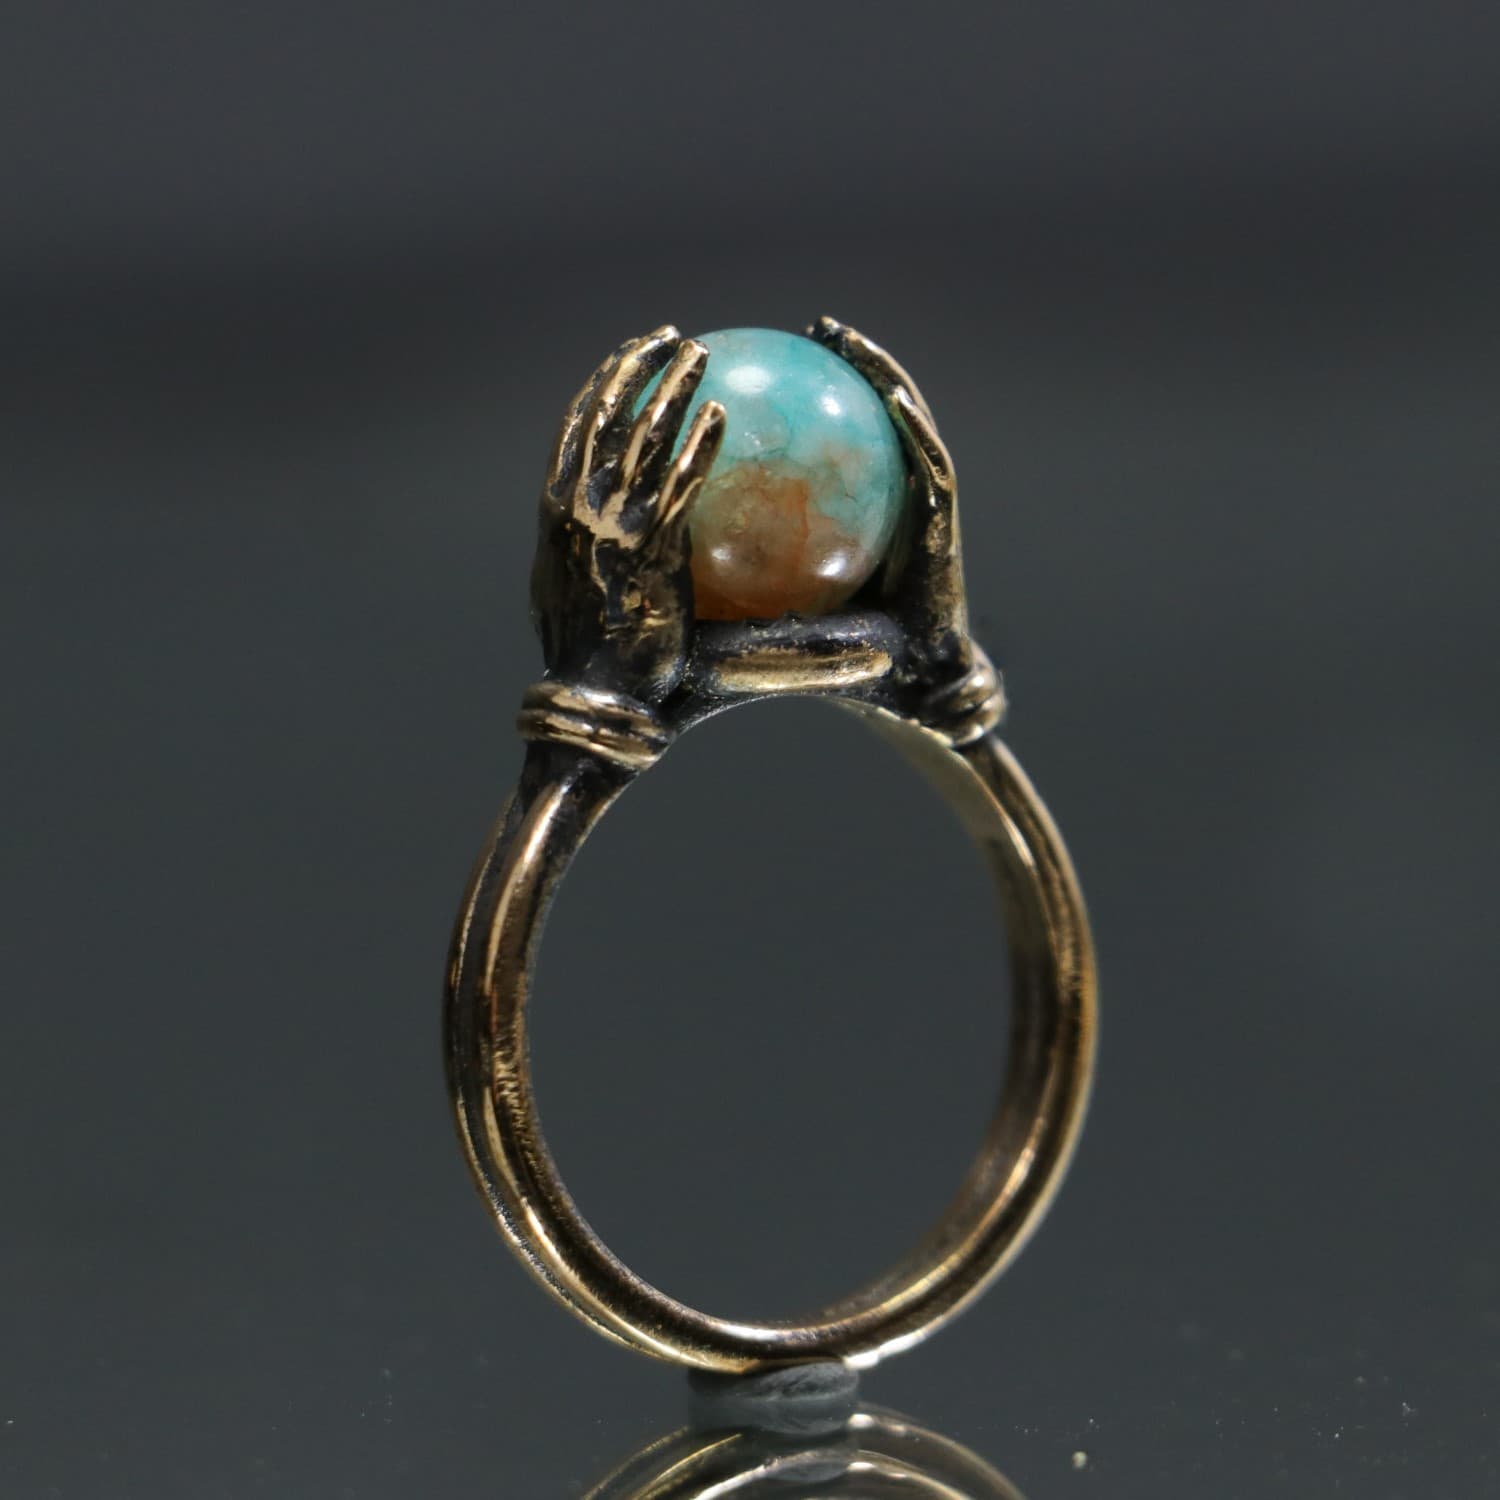 Jade Stone Ring Between Hands